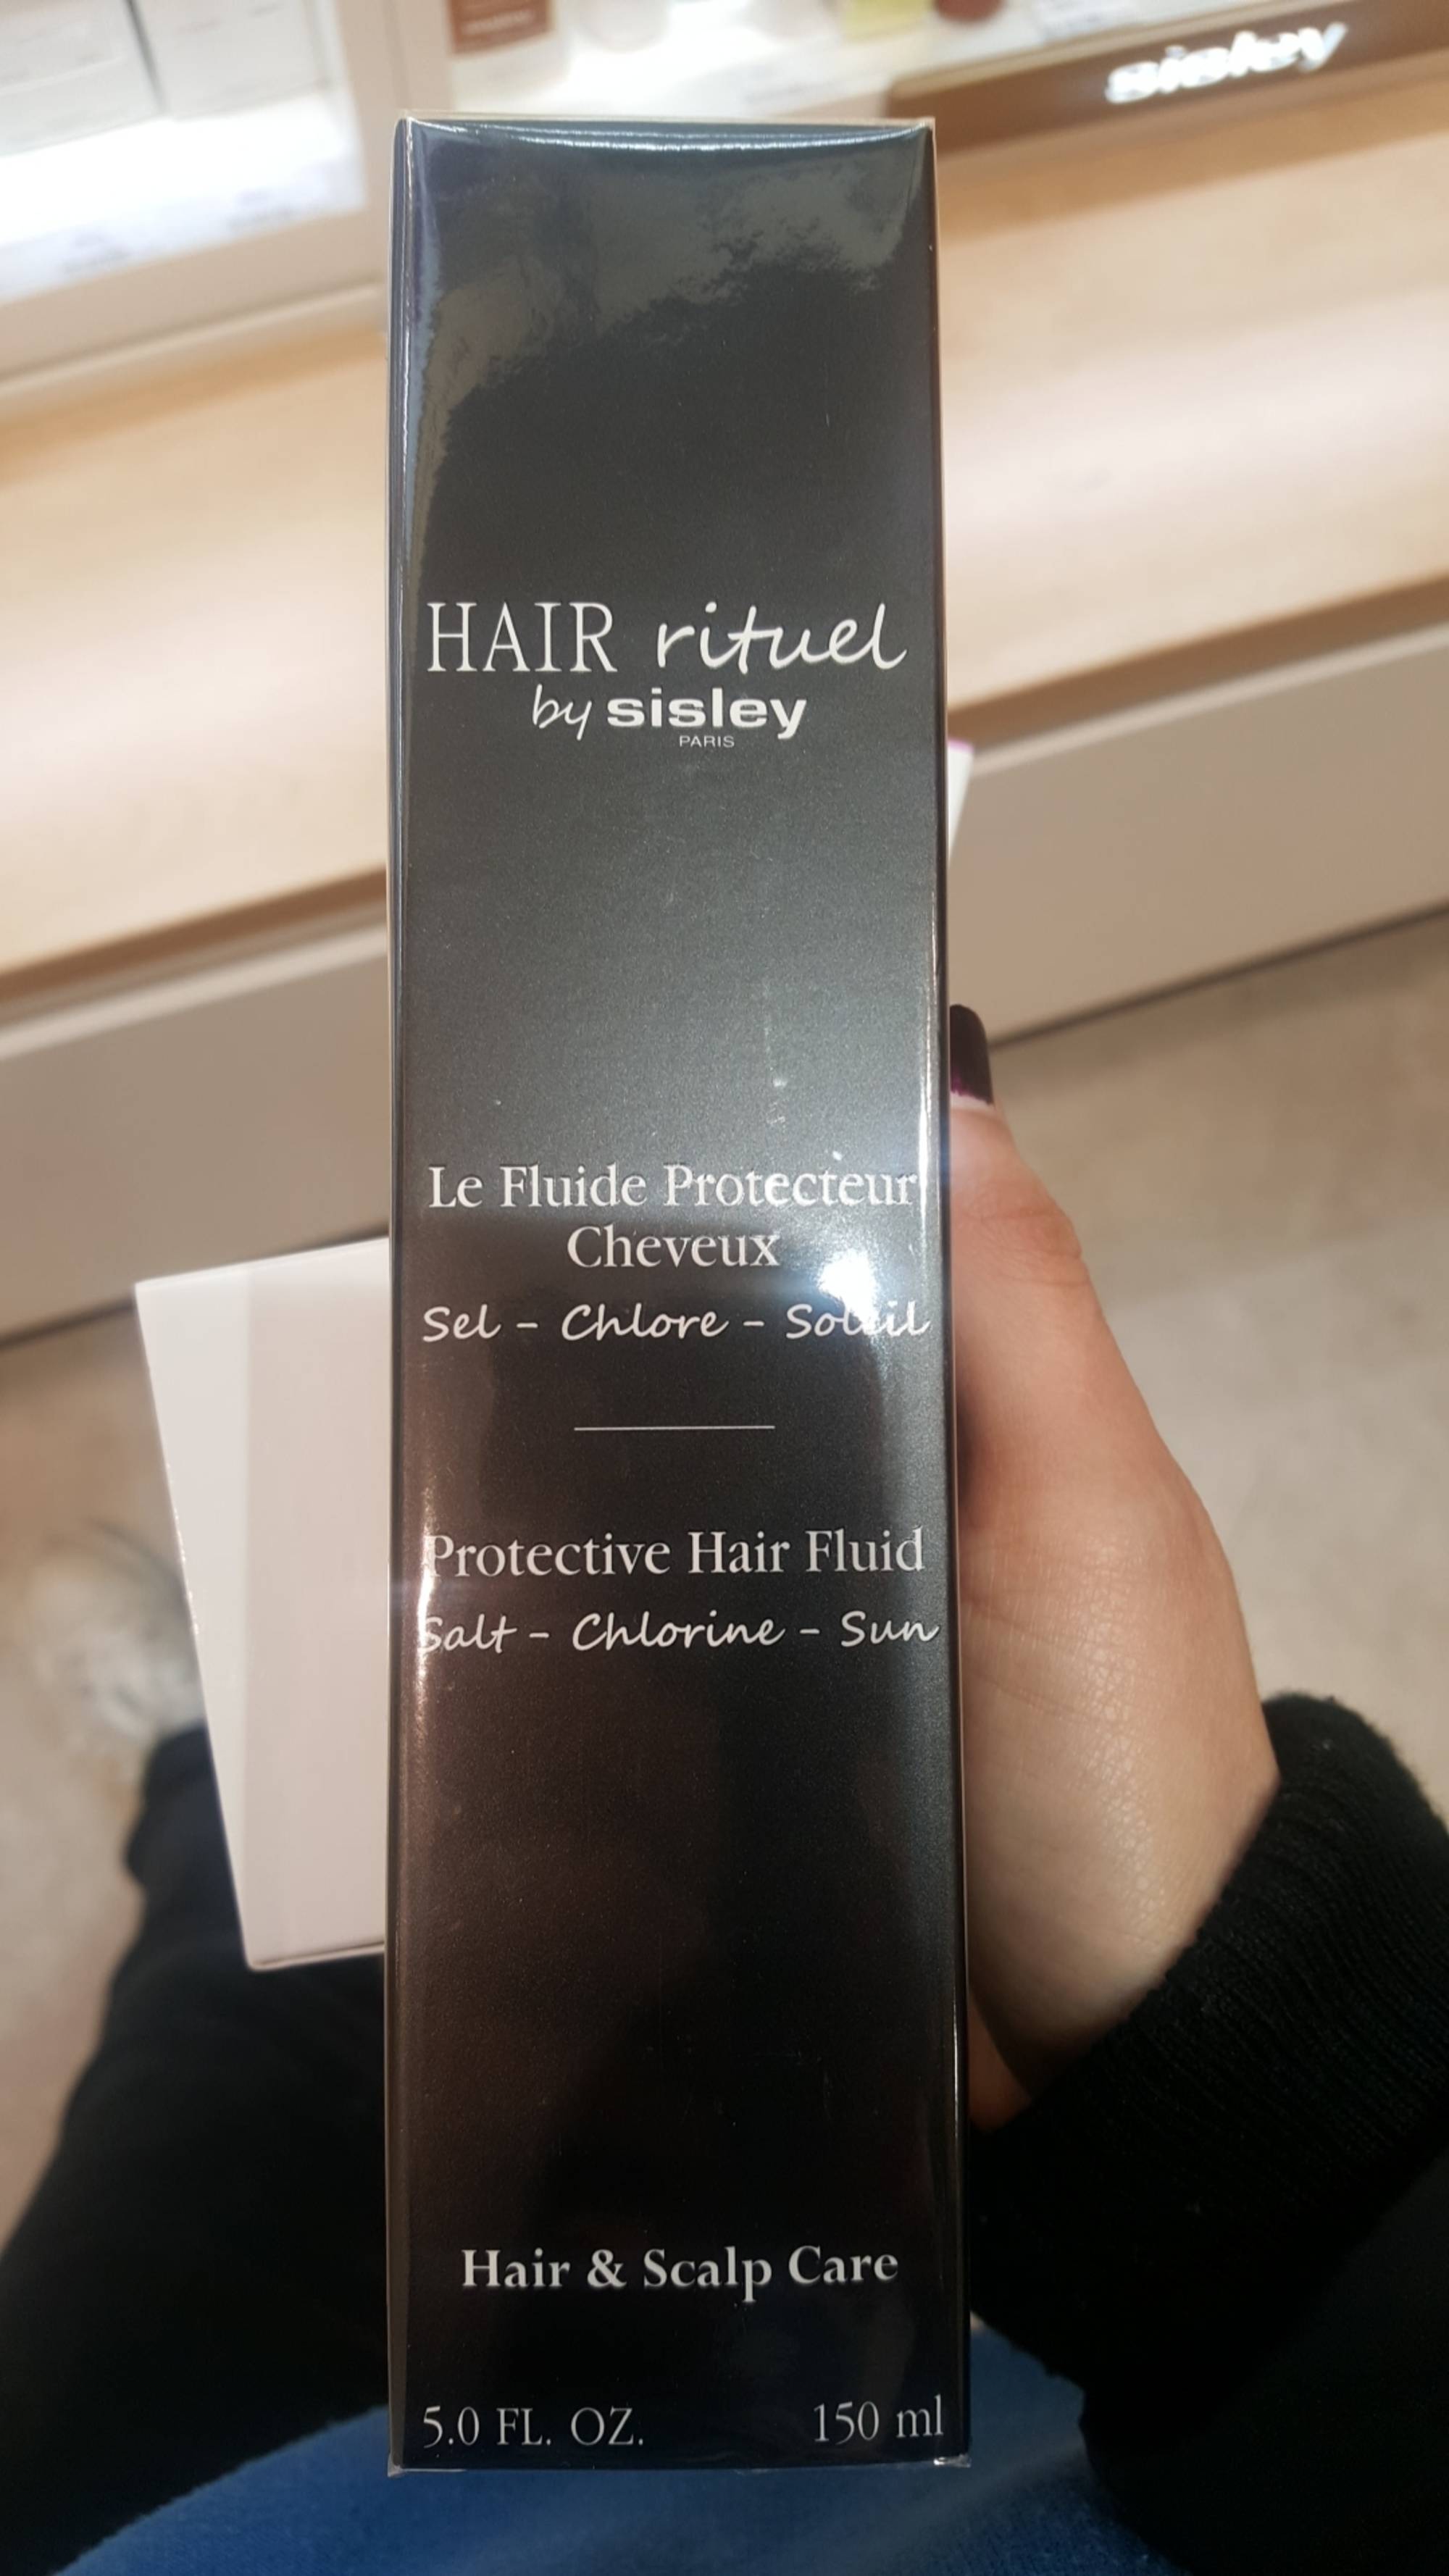 SYSLEY - Hair rituel - Le fluide protecteur cheveux